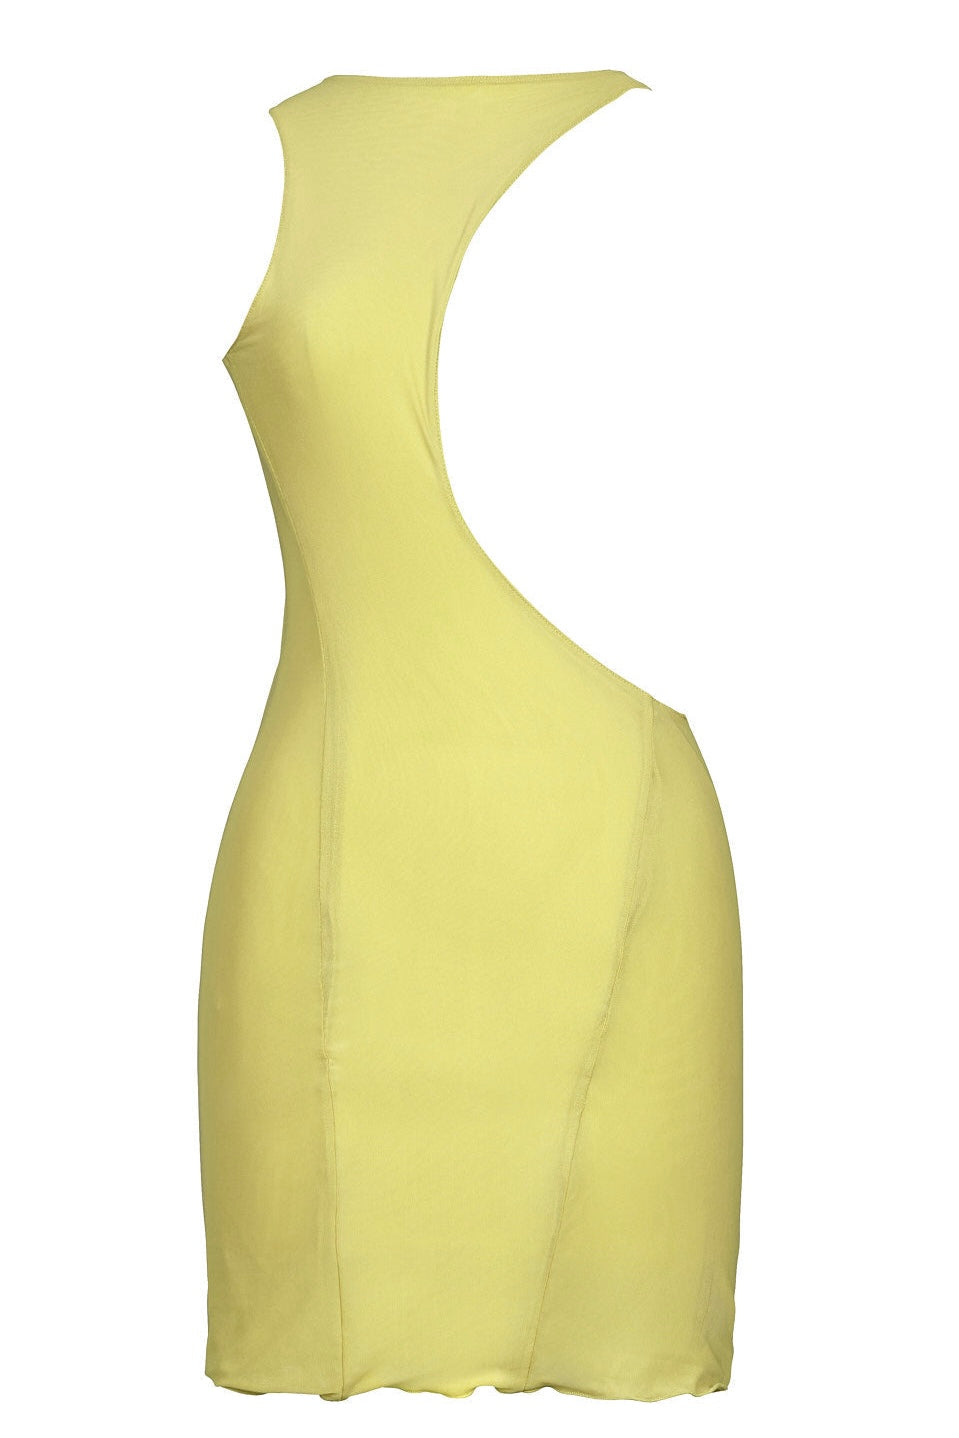 שמלת זנזיבר צבע צהוב - ZANZIBAR DRESS COLOR YELLOW